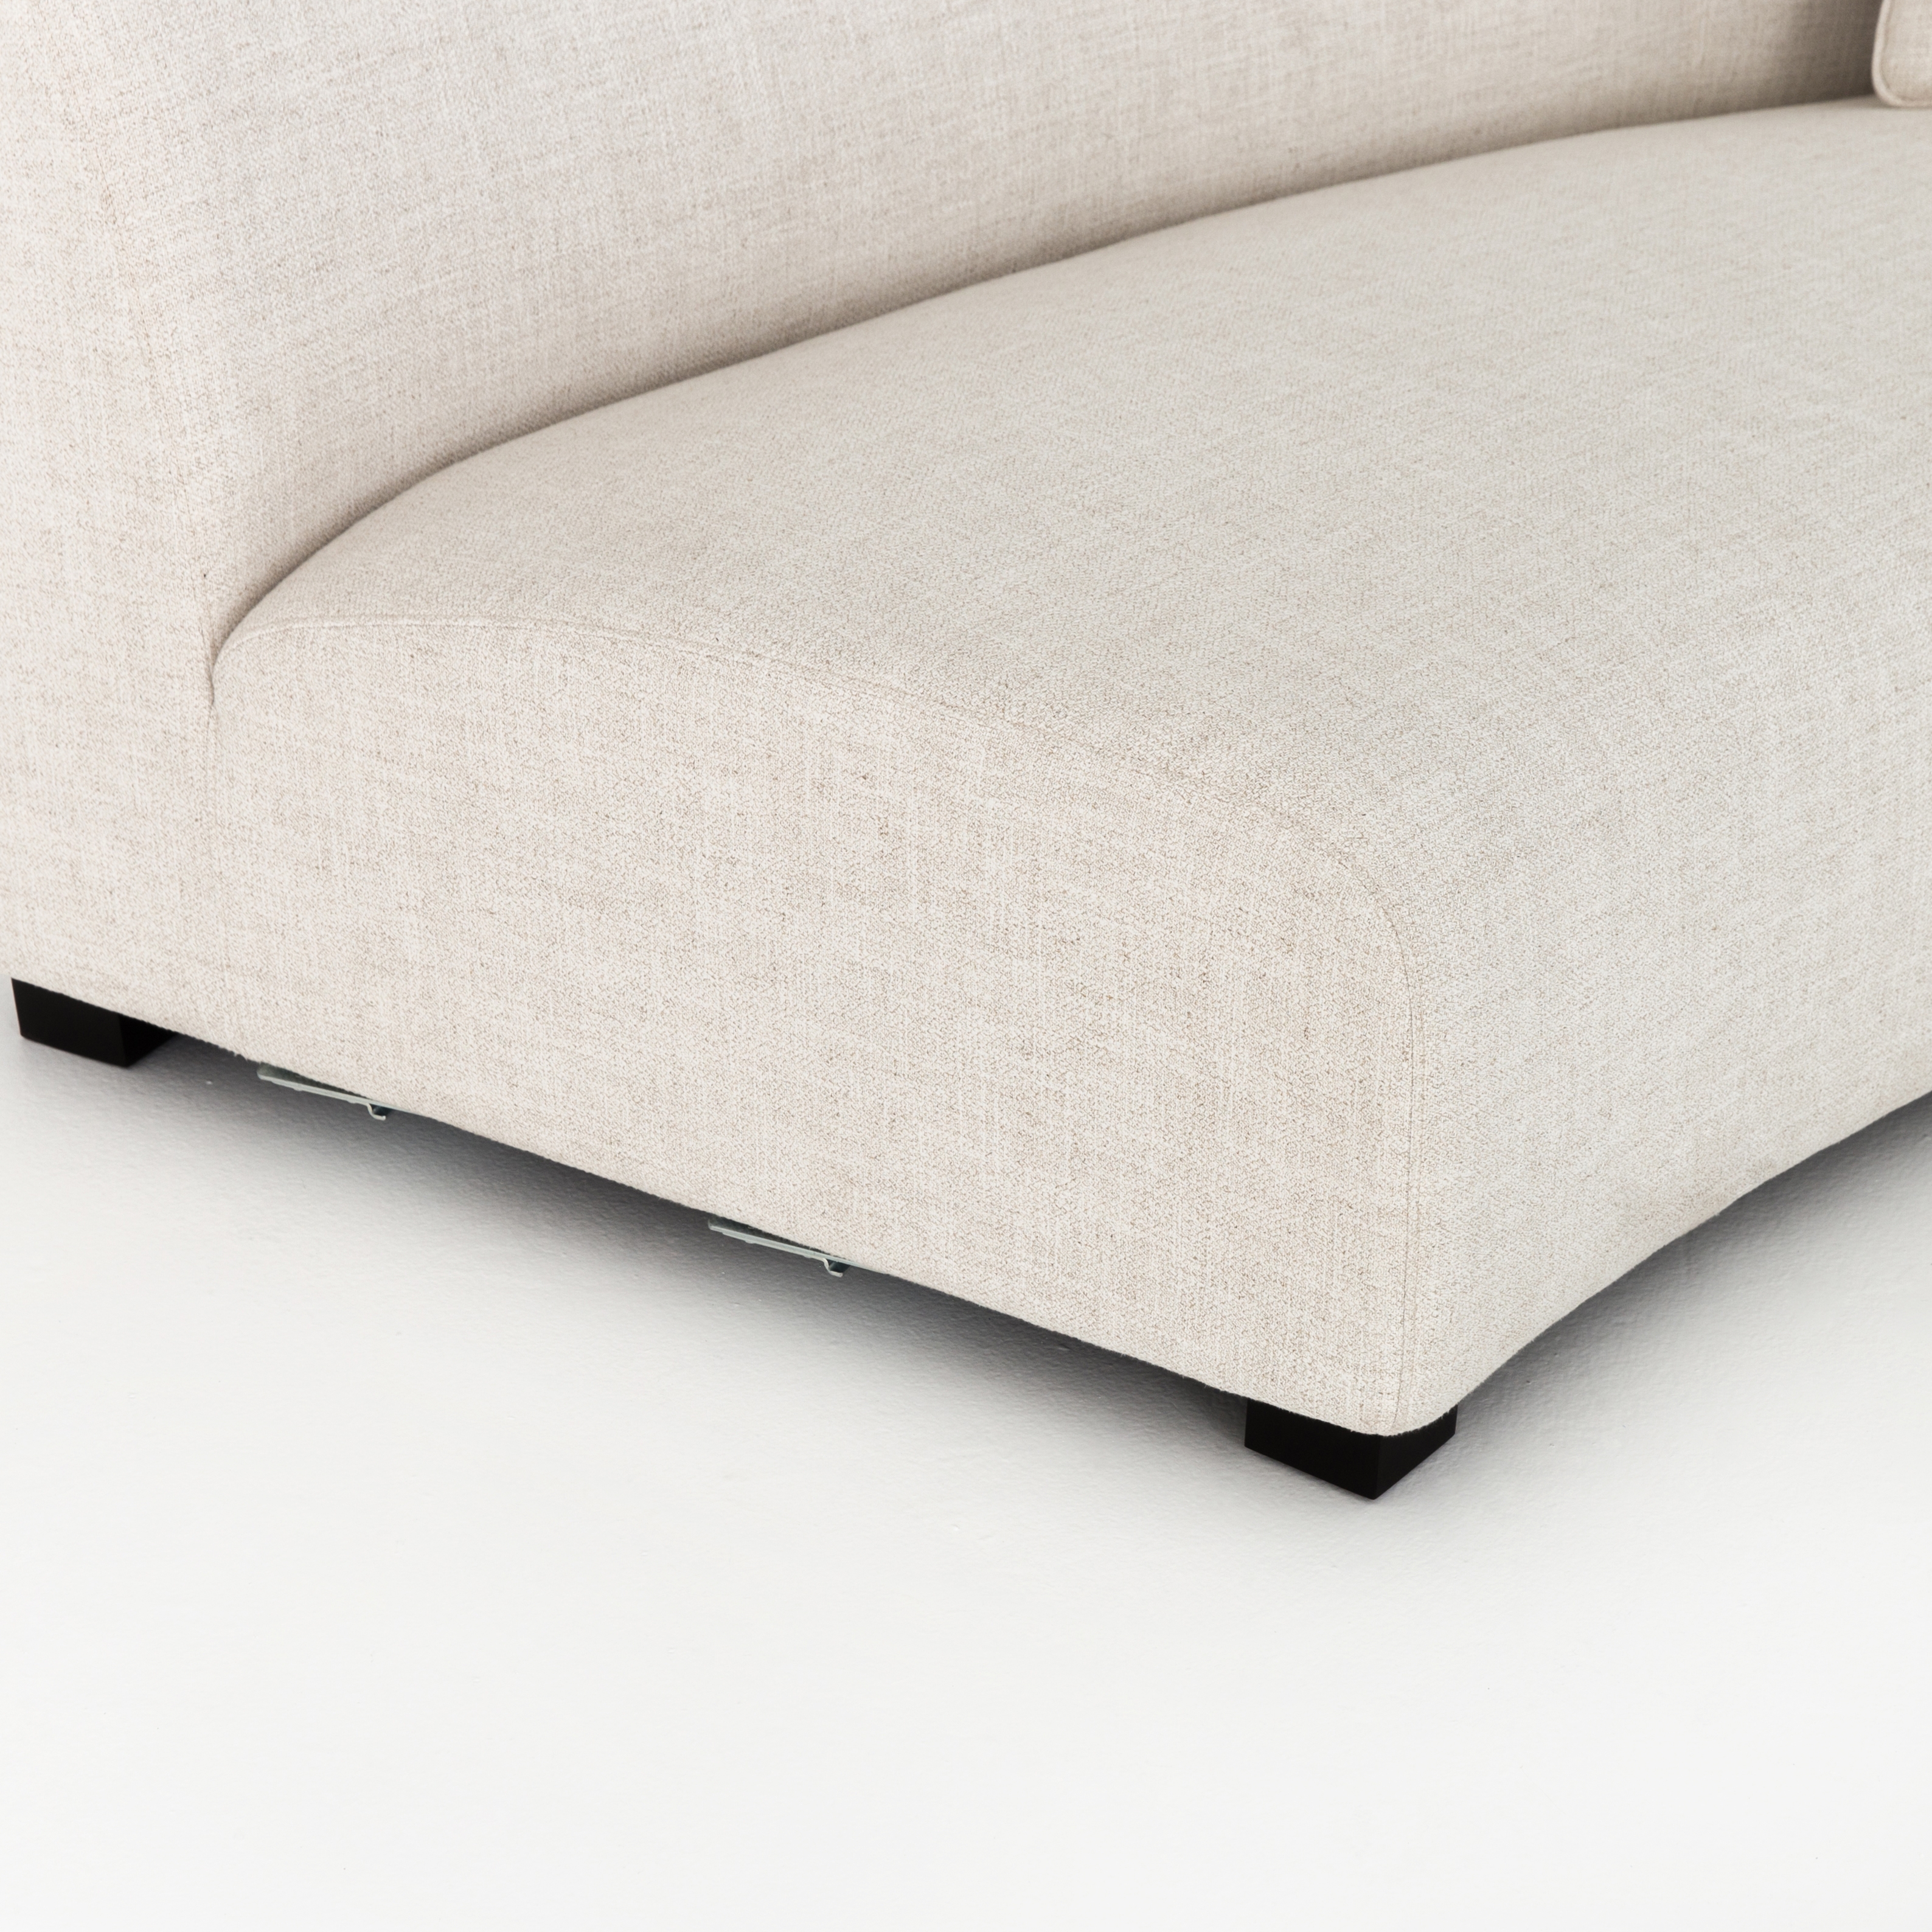 Saban 2-Piece Curved Sectional Sofa - Image 4